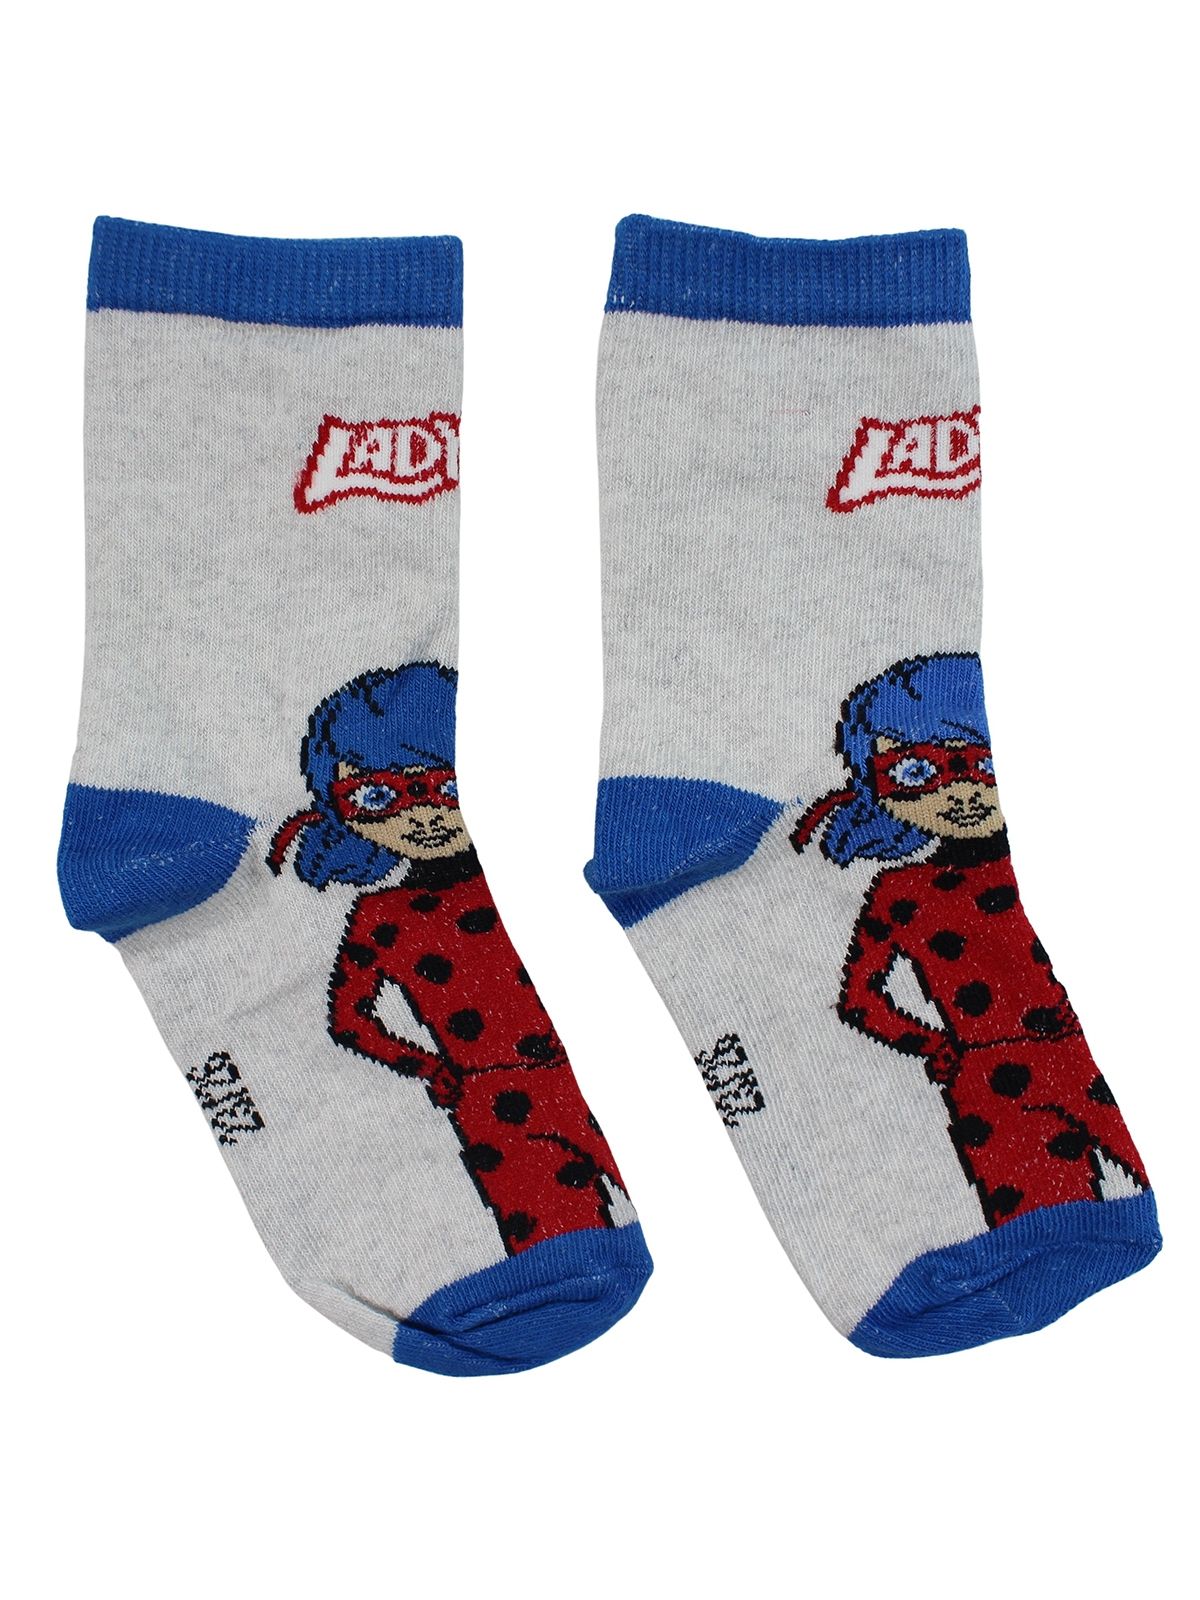 LadyBug Pair of socks